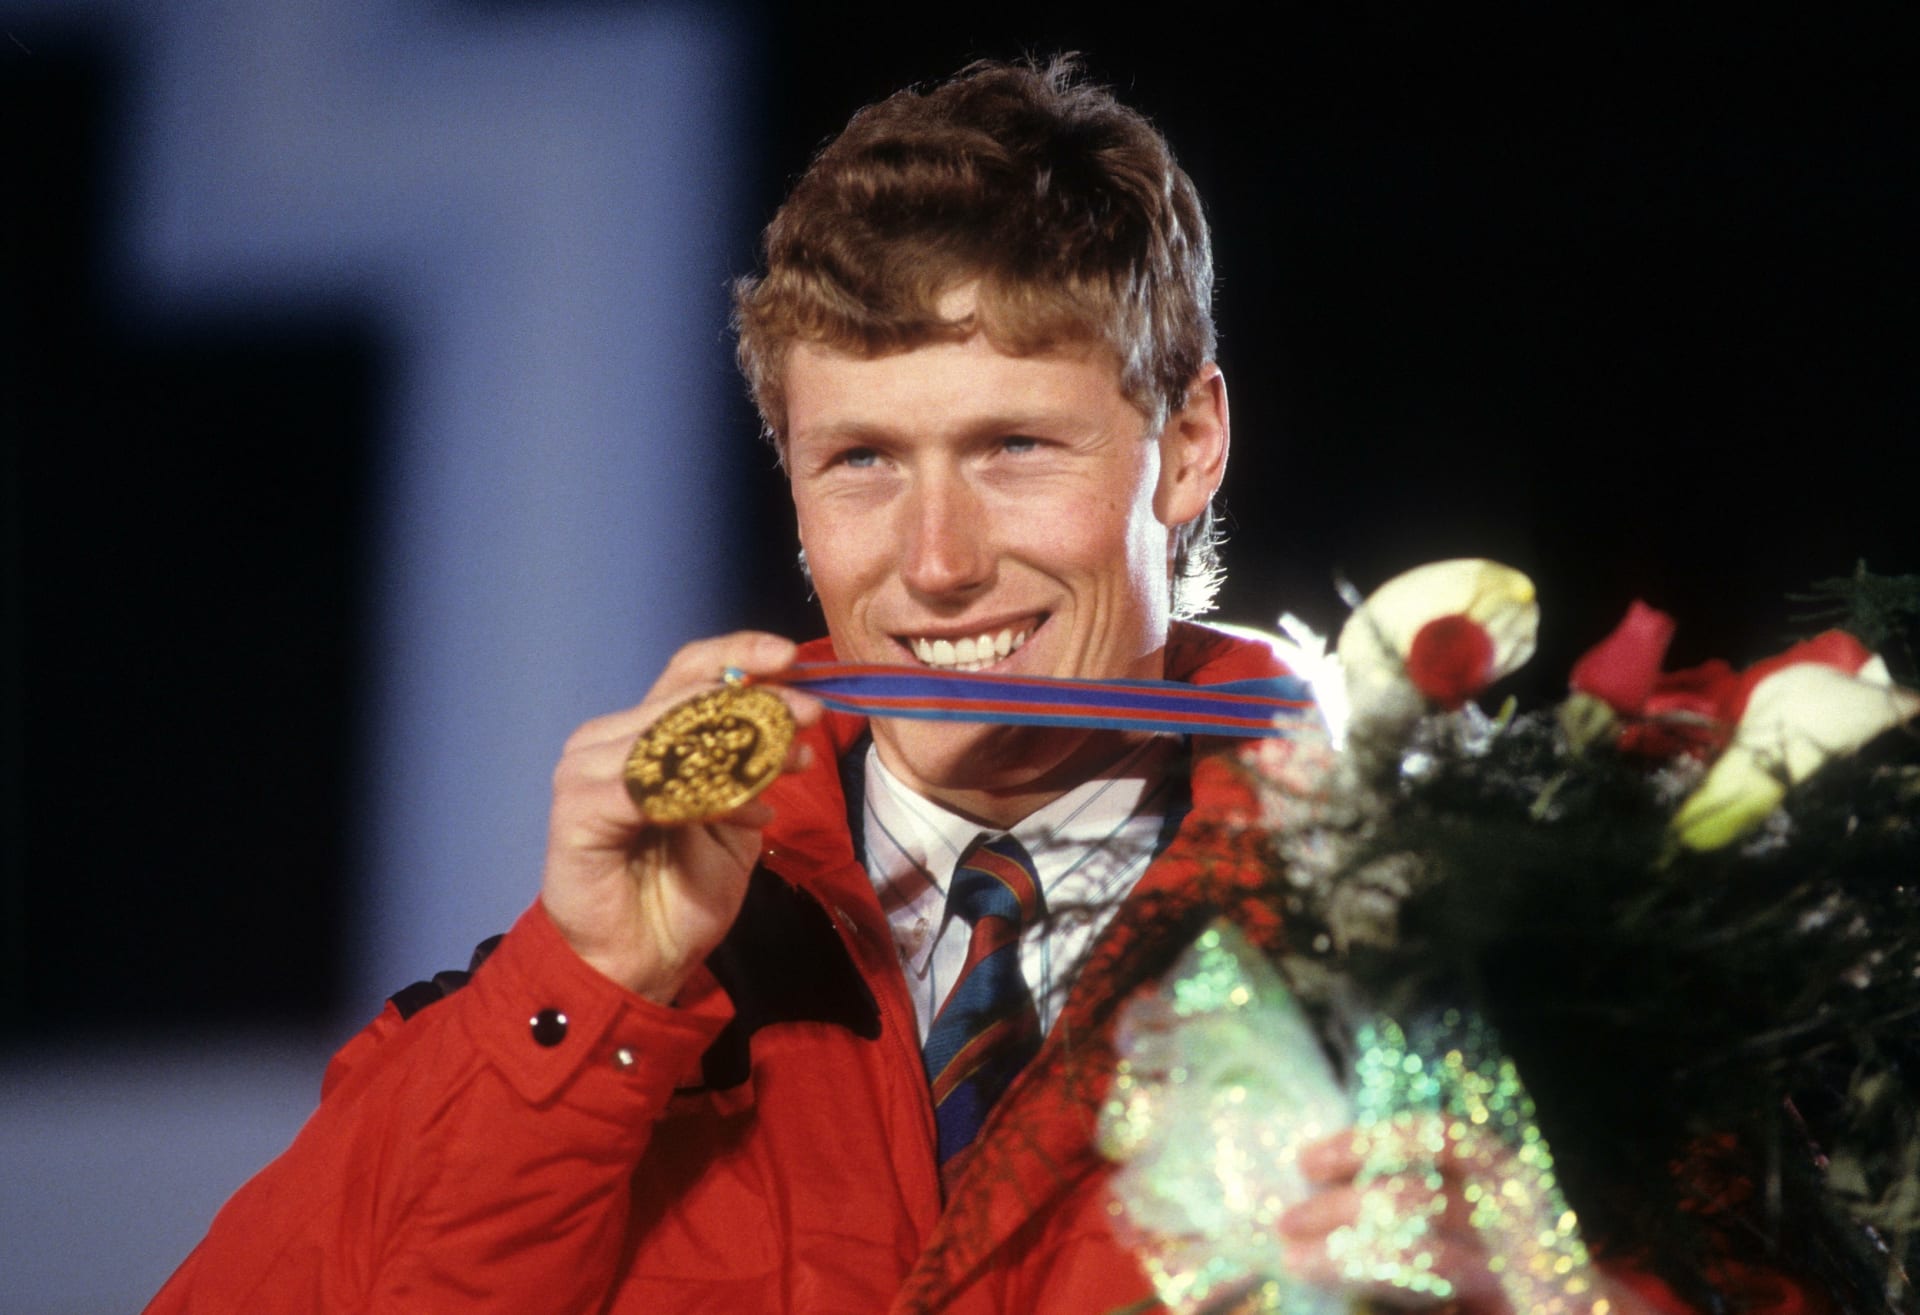 Pirmin Zurbriggen převzal zlatou medaili v Calgary za vítězství ve sjezdu.